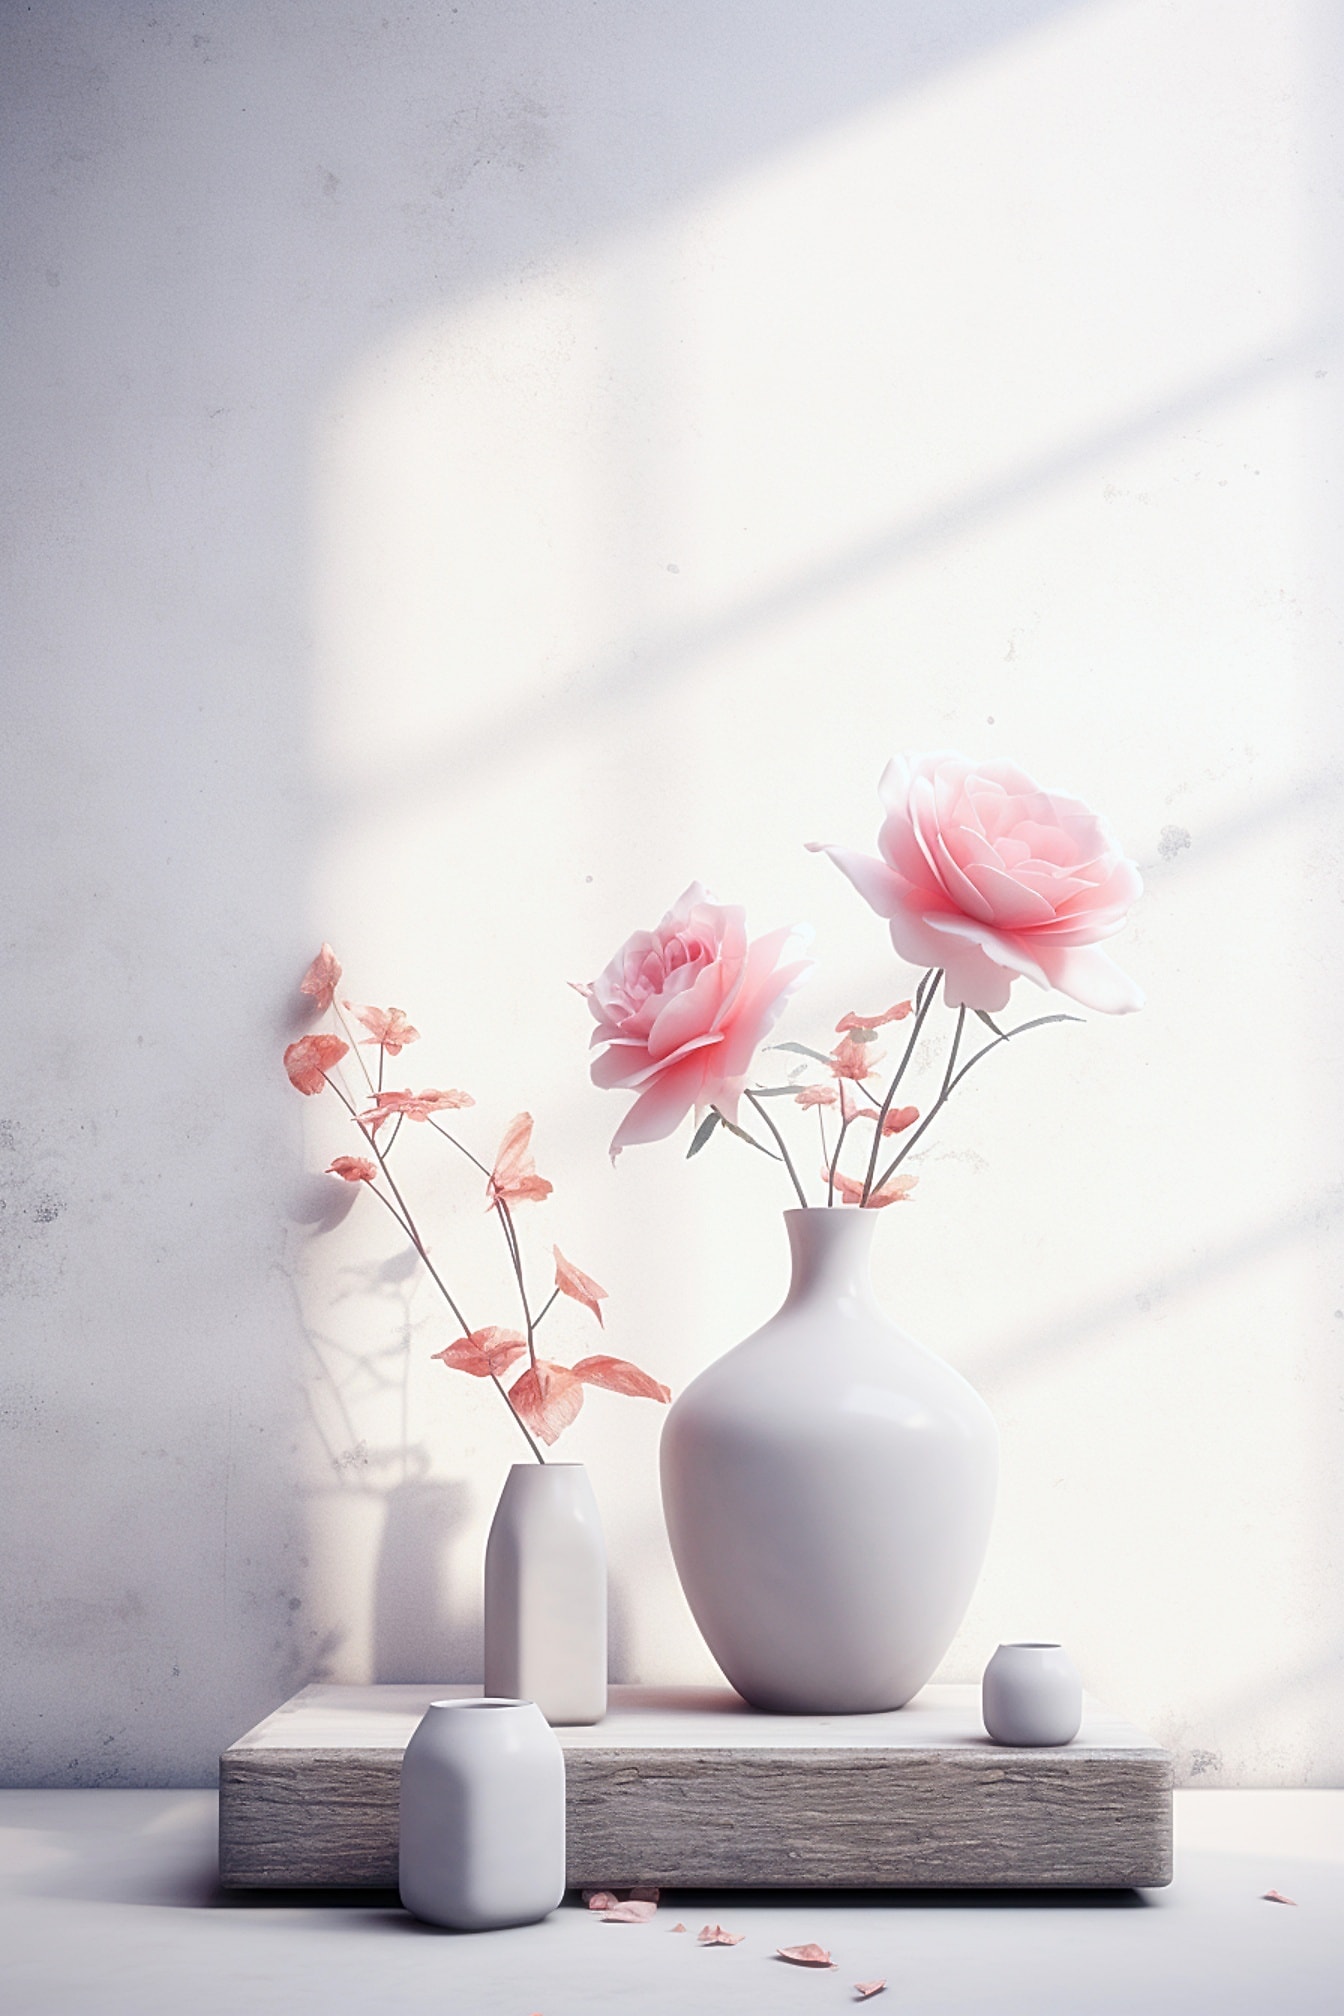 Biały ceramiczny wazon z różowawymi kwiatami róży